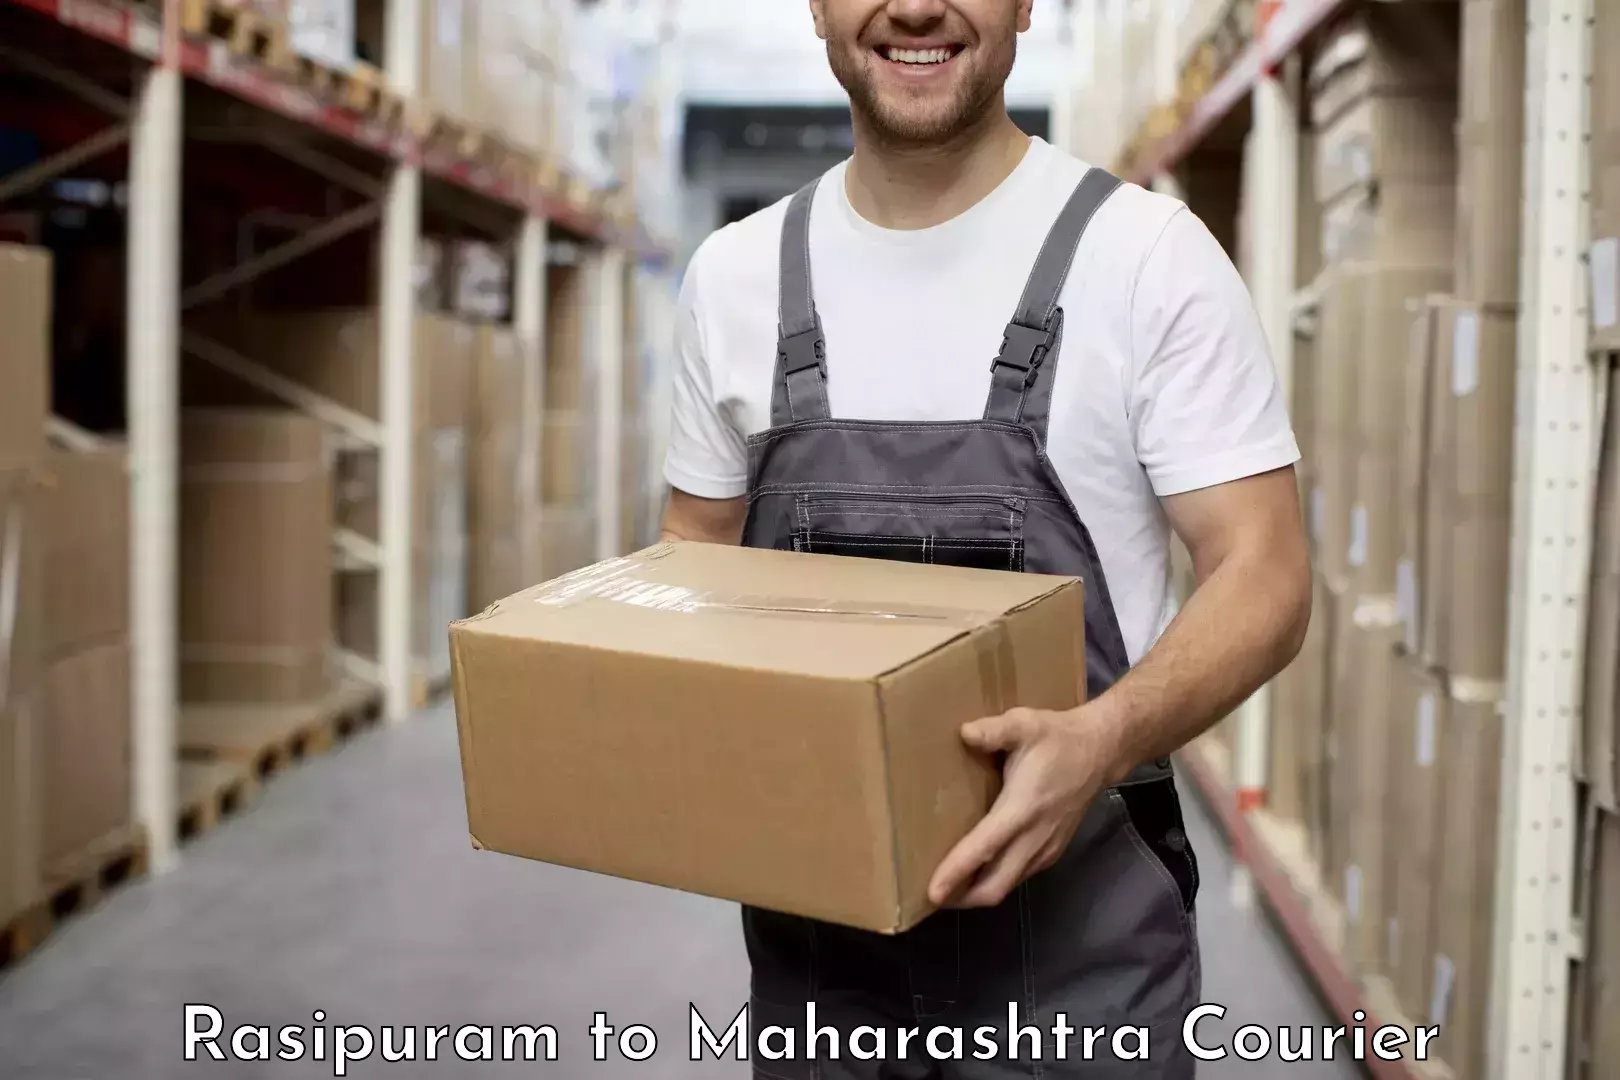 Urgent courier needs Rasipuram to Borivali